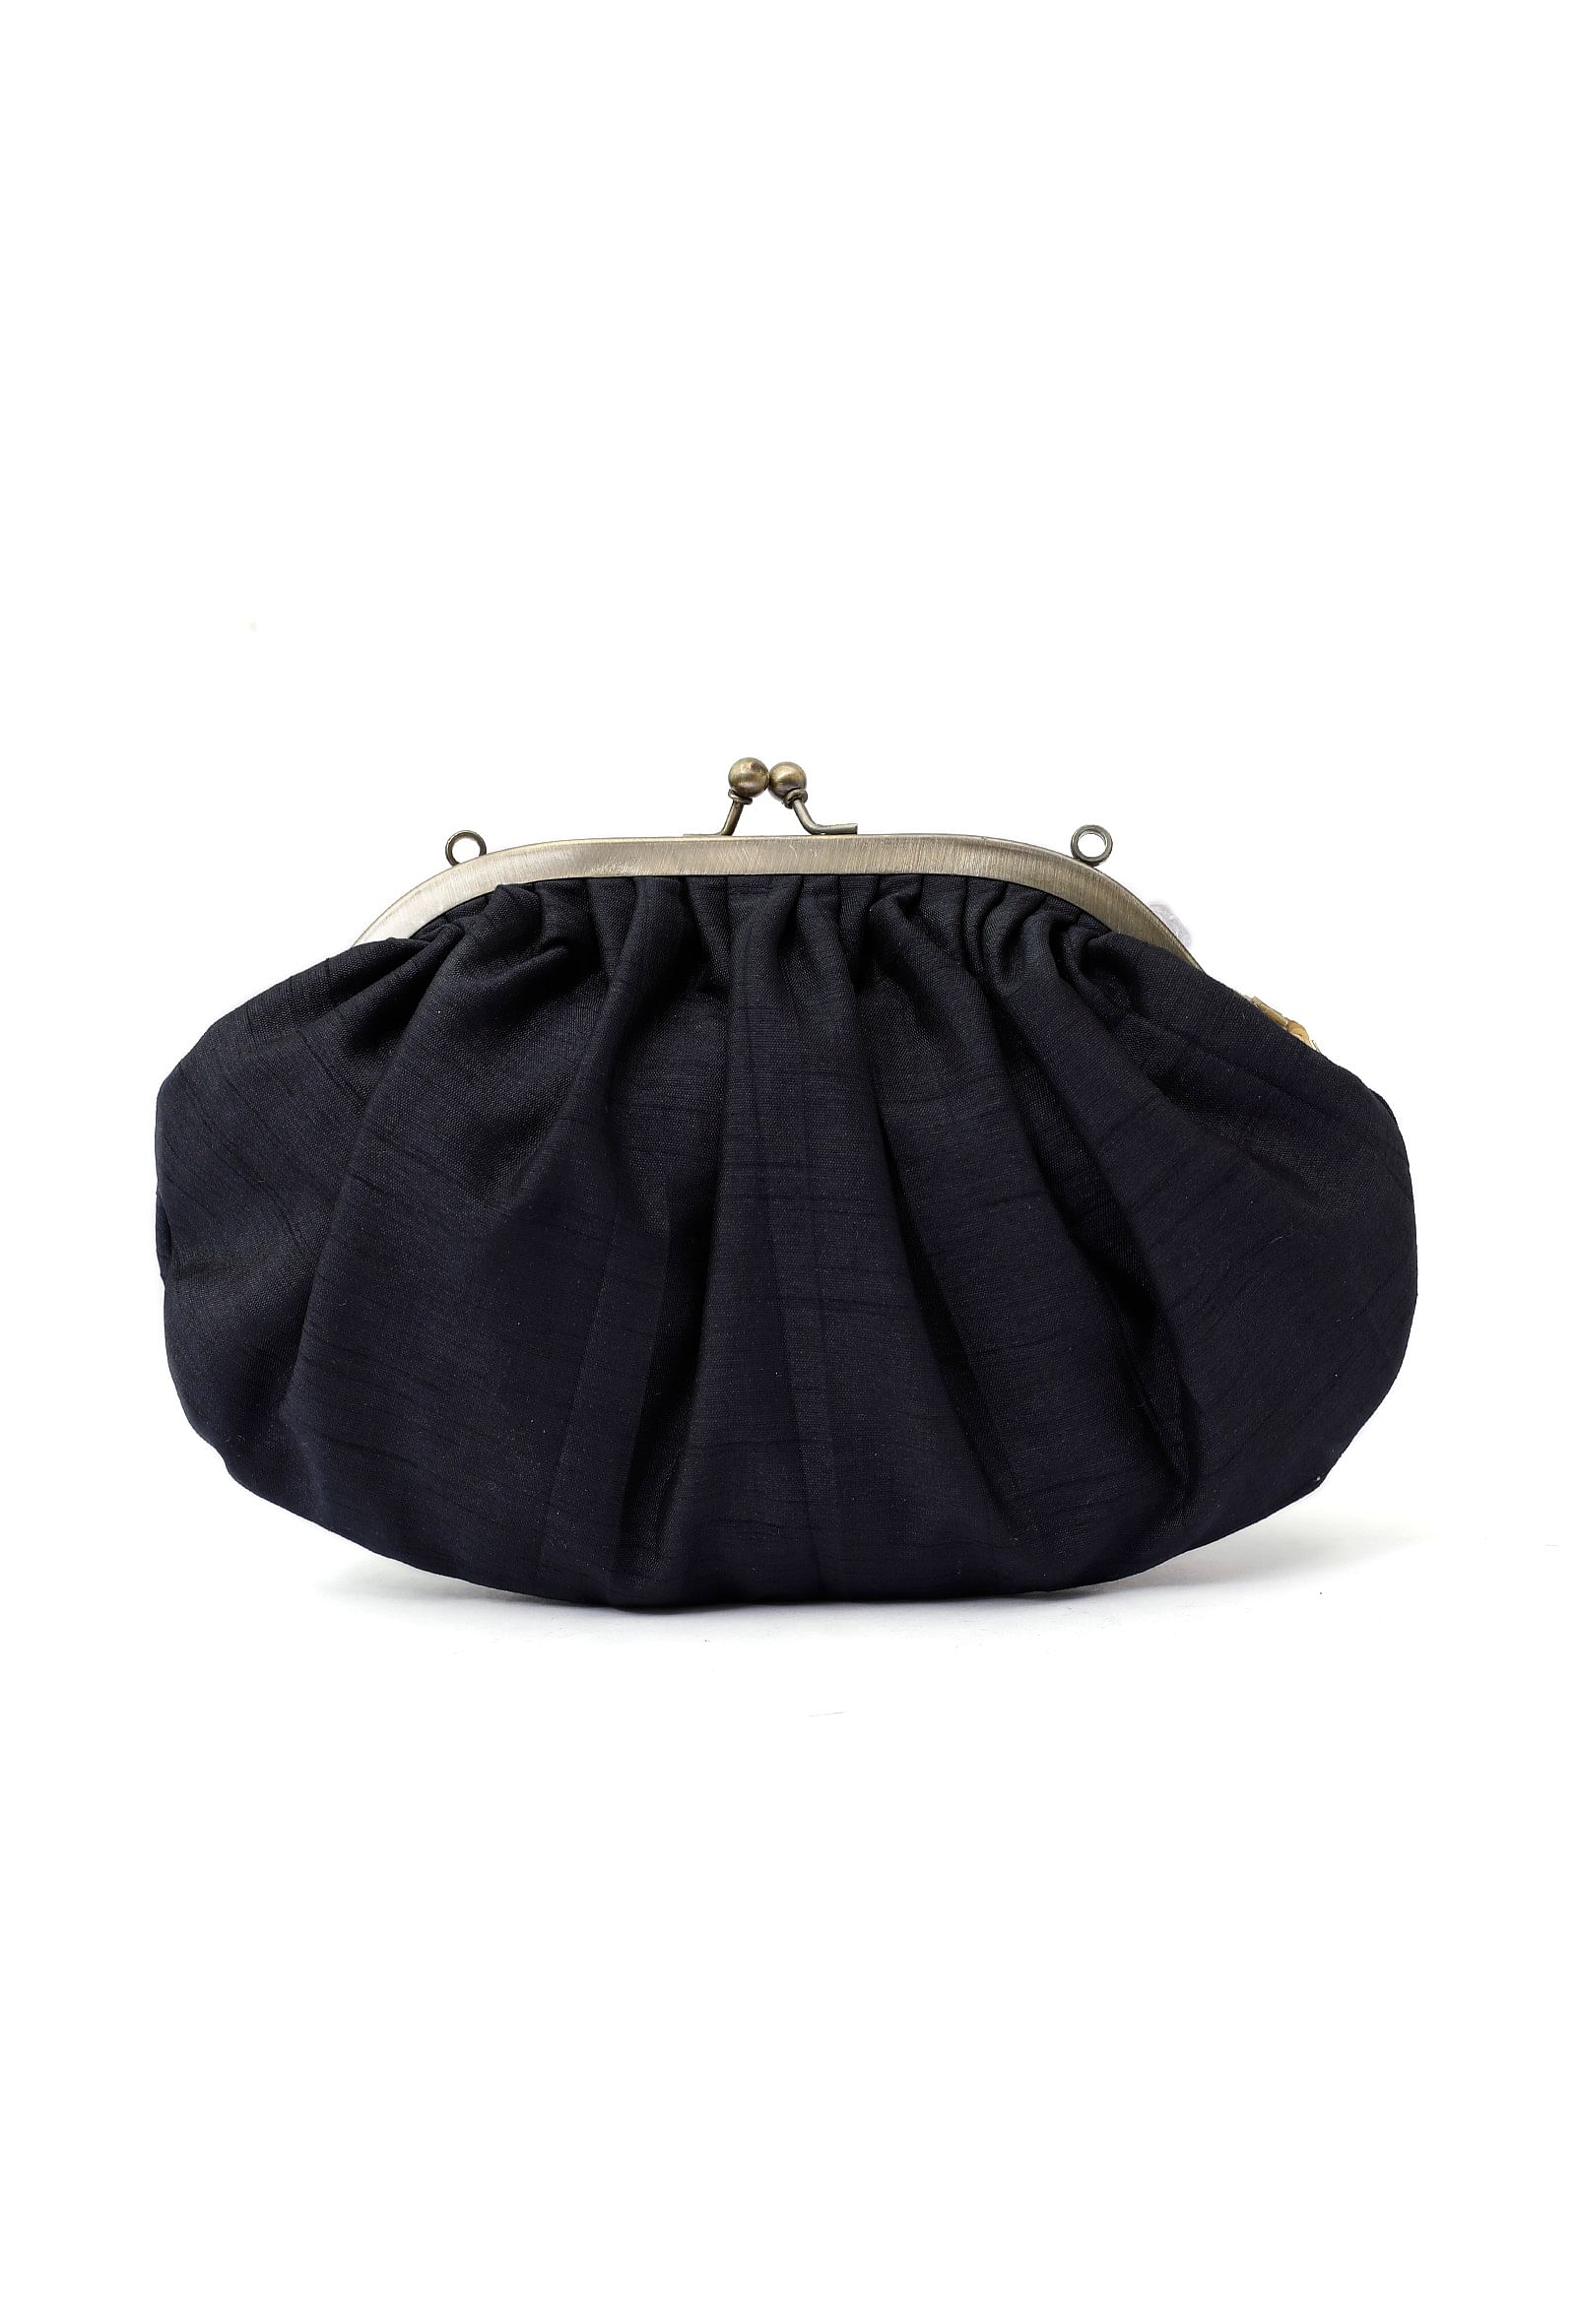 Prussian Black Embellished Clutch Bag